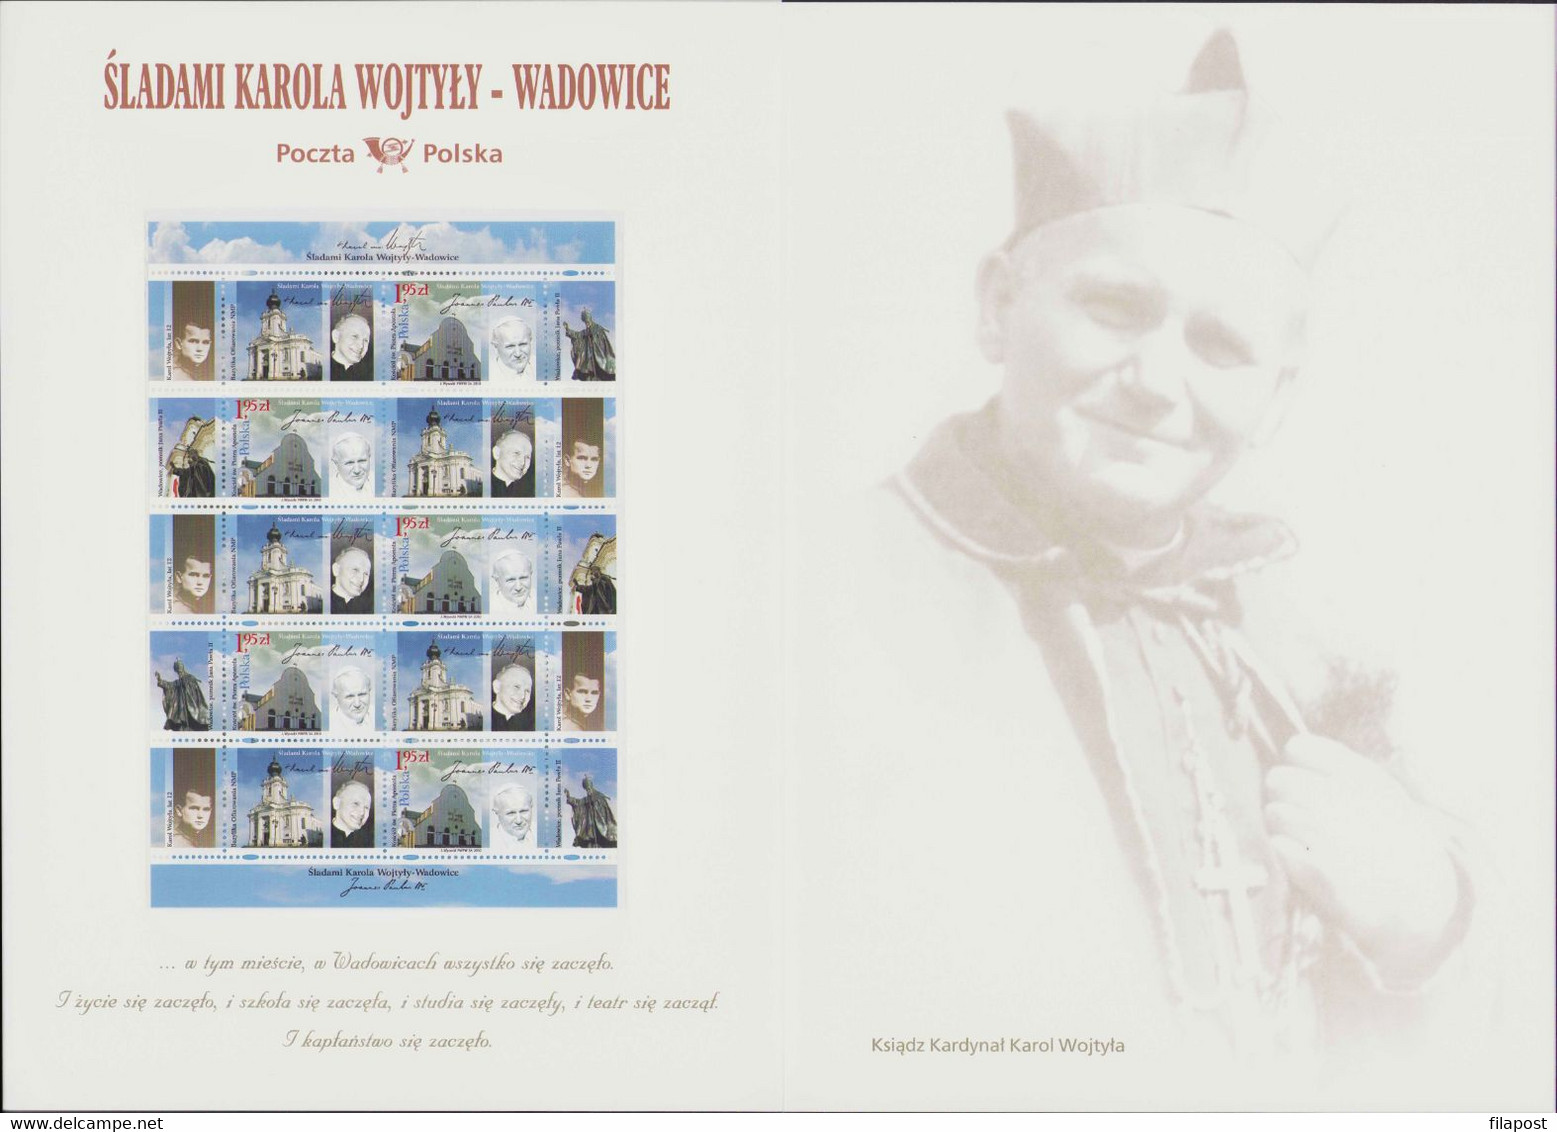 Poland 2010 Mi 4484 Souvenir Booklet / In The Steps Of Karol Wojtyla - Wadowice, Pope John Paul II / Full Sheet MNH**FV - Rollen